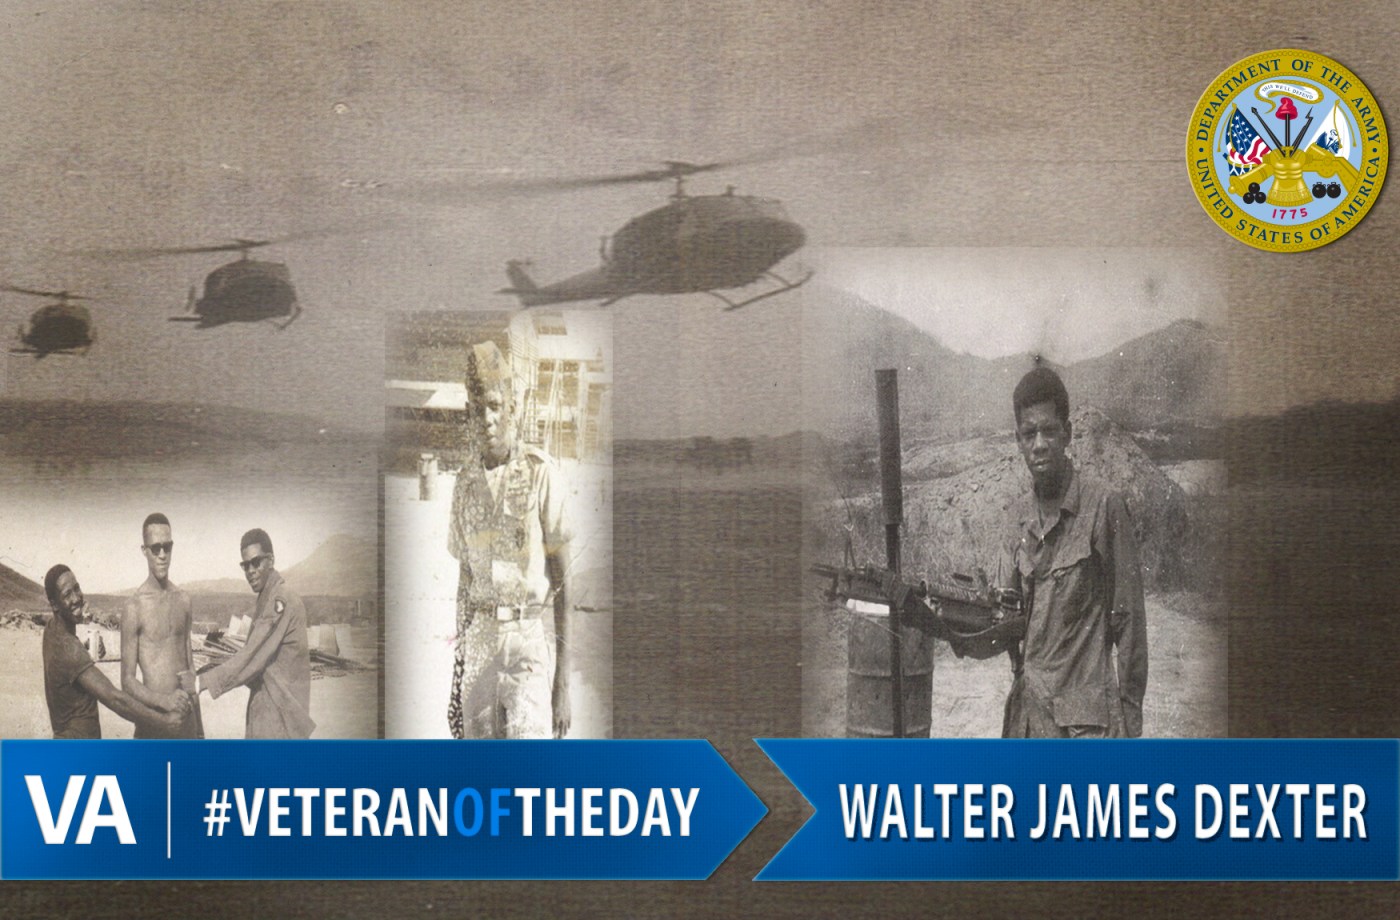 Veteran of the Day Walter James Dexter